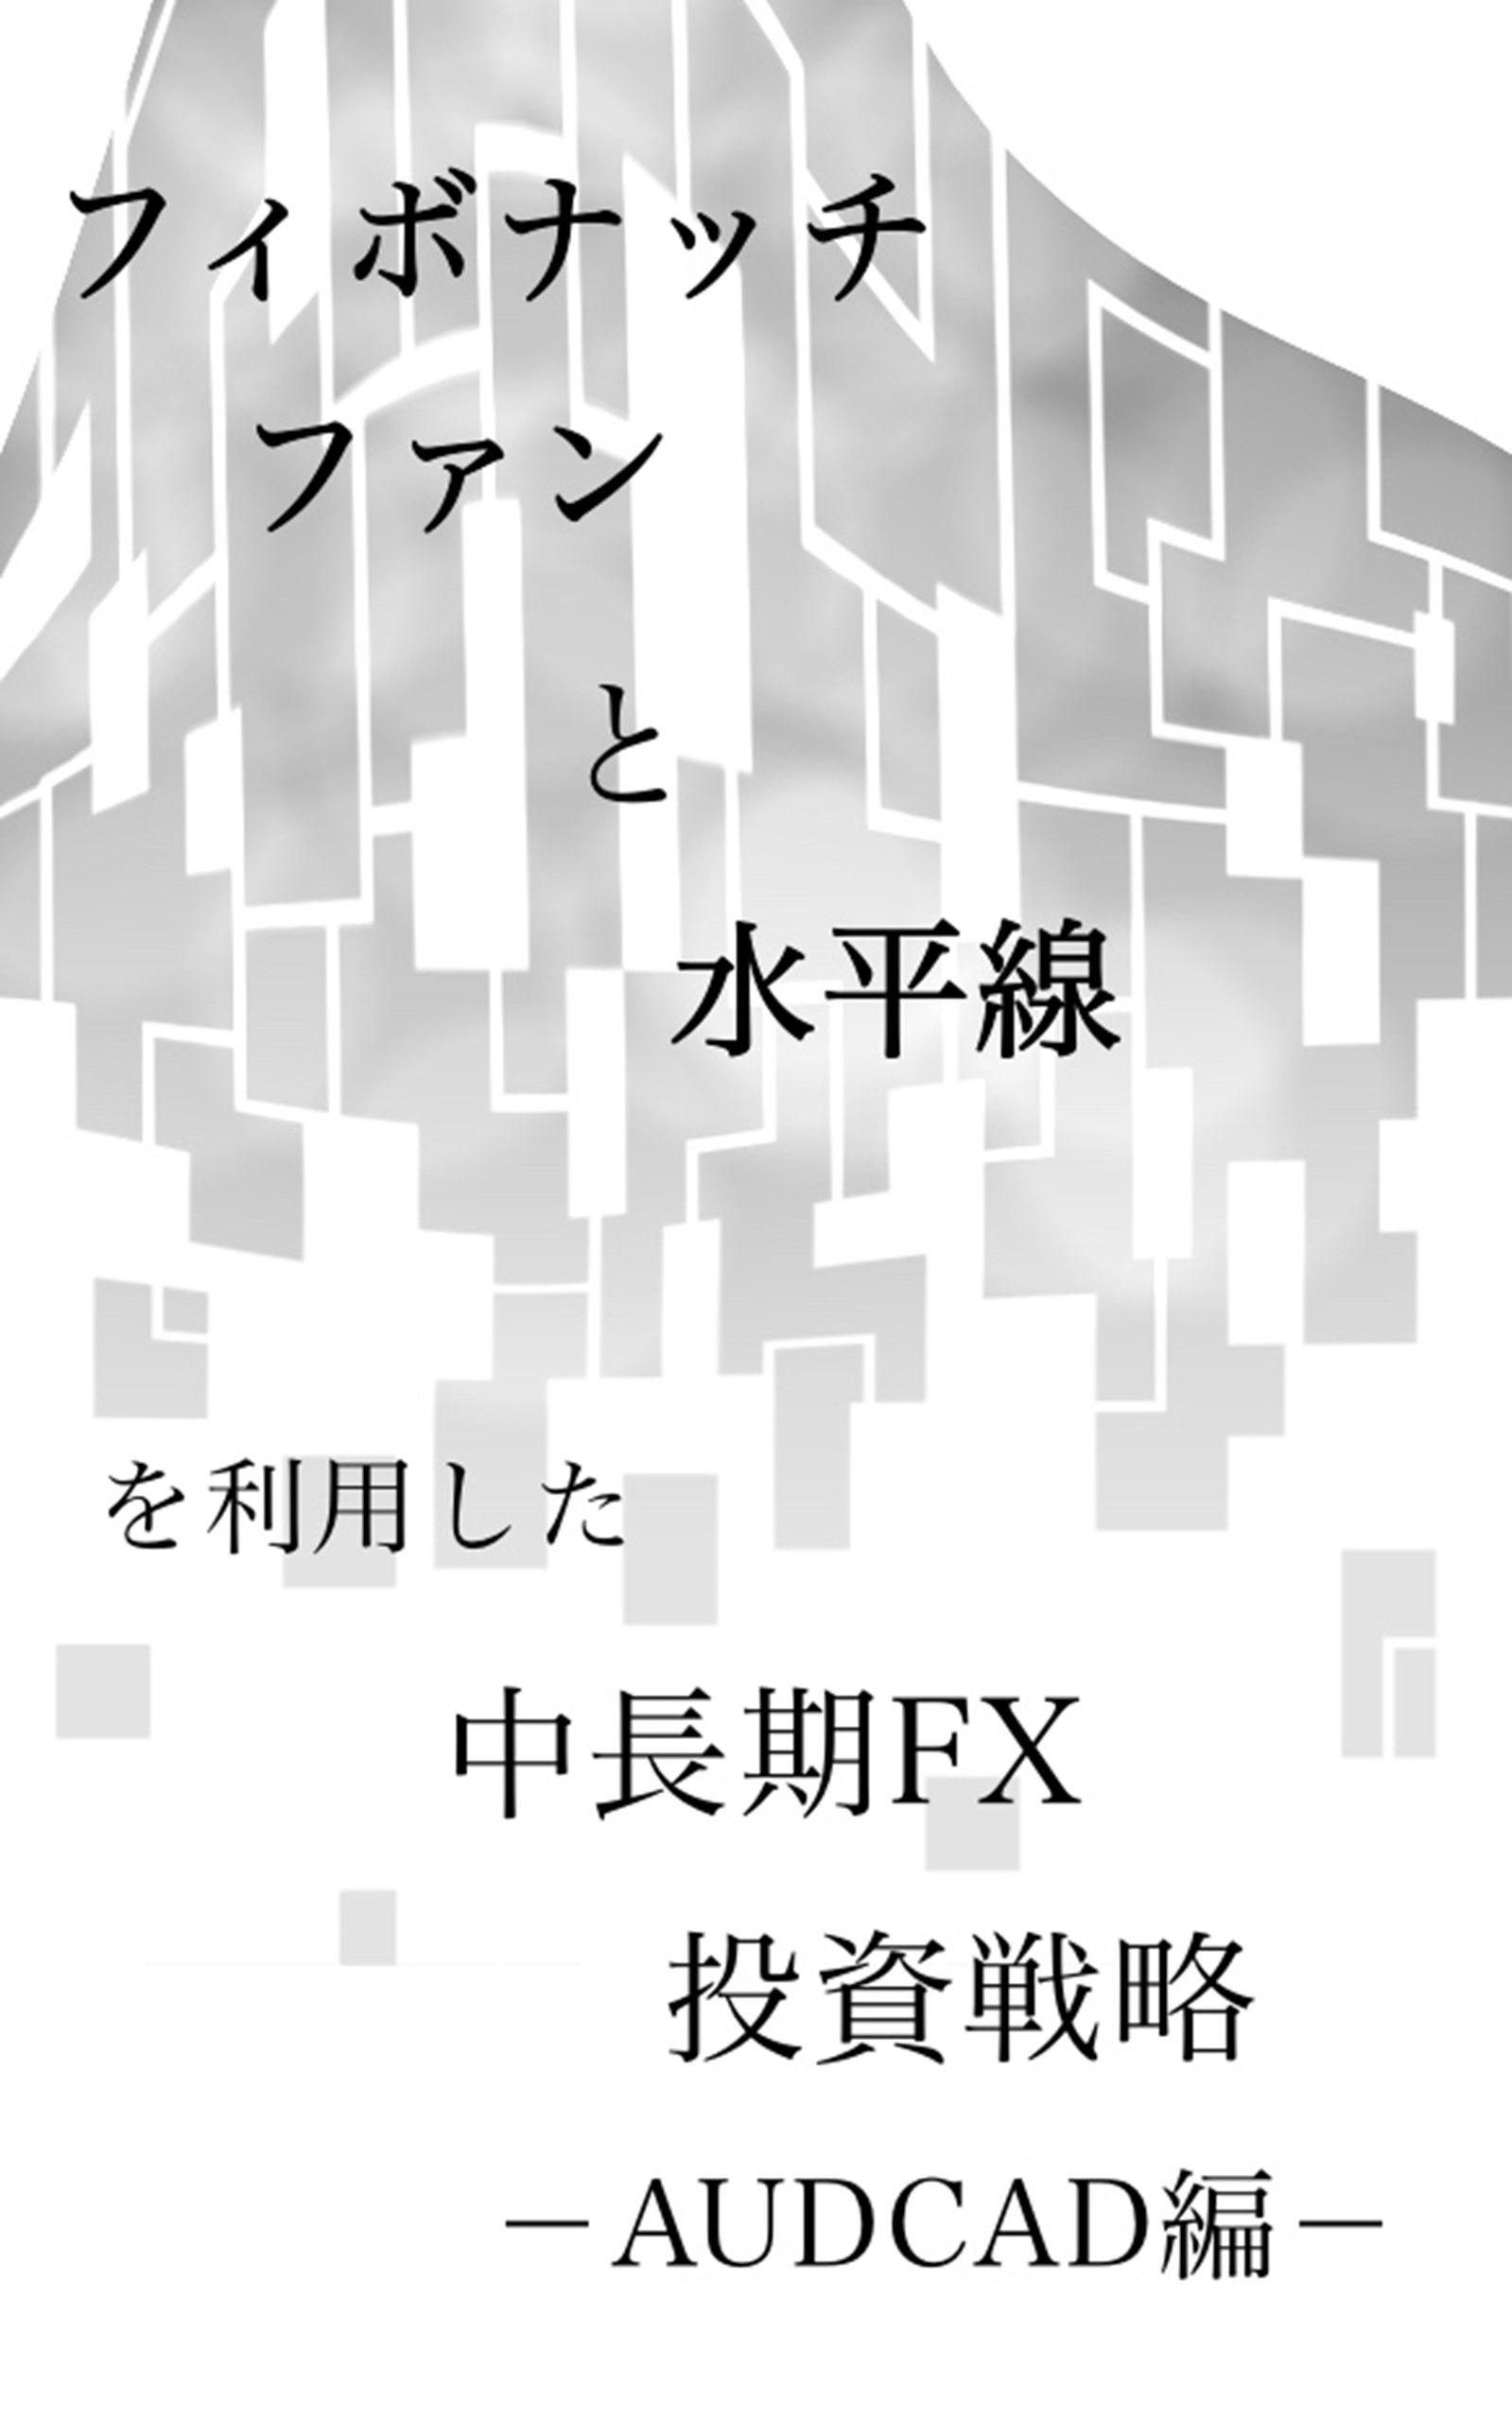 【シンプルFX】フィボナッチファンと水平線を利用した中長期FX投資戦略　ーAUDCAD編ー インジケーター・電子書籍